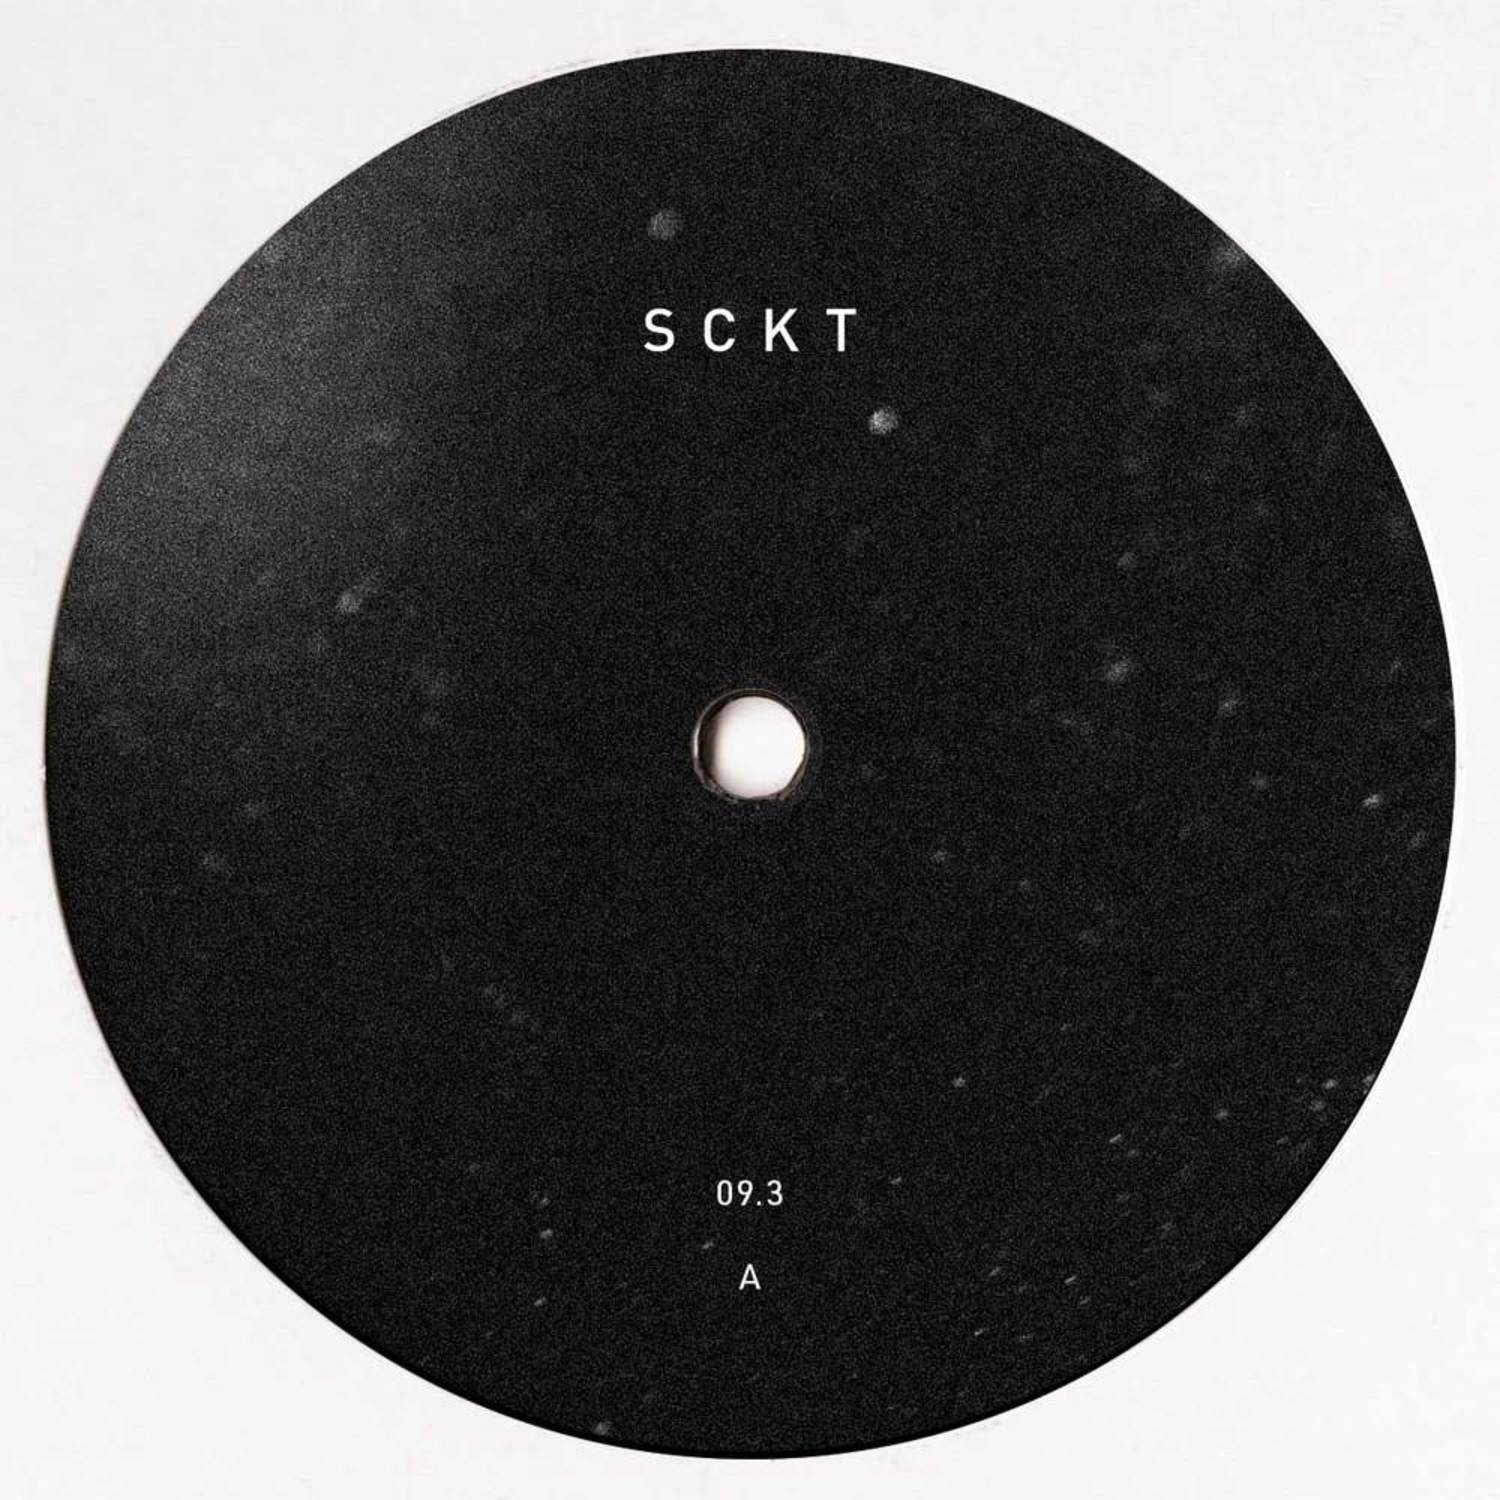 Markus Suckut - SCKT09.3C 